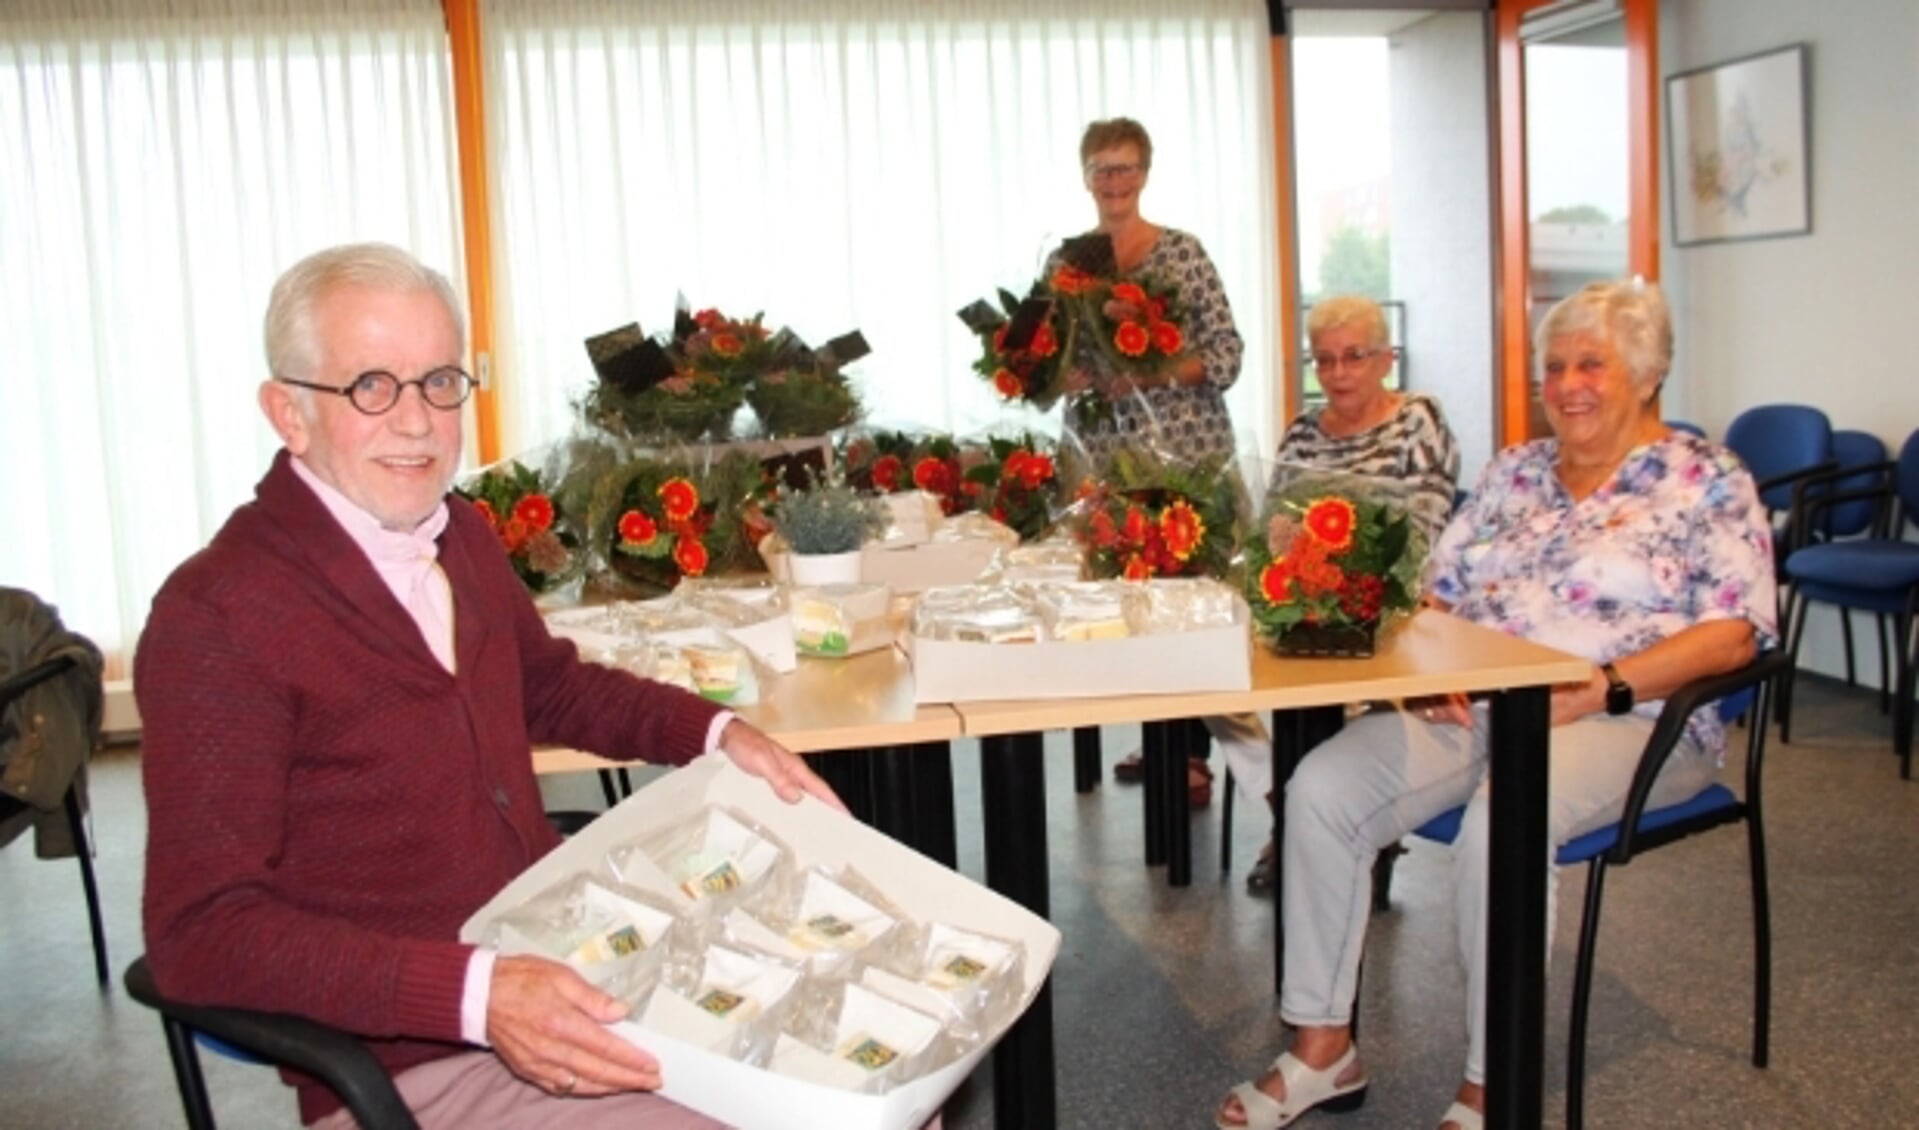 Door corona geen feestje met alle bewoners, maar de vier bestuursleden delen bloemen, gebak en een presentje uit. (Foto: Lysette Verwegen)